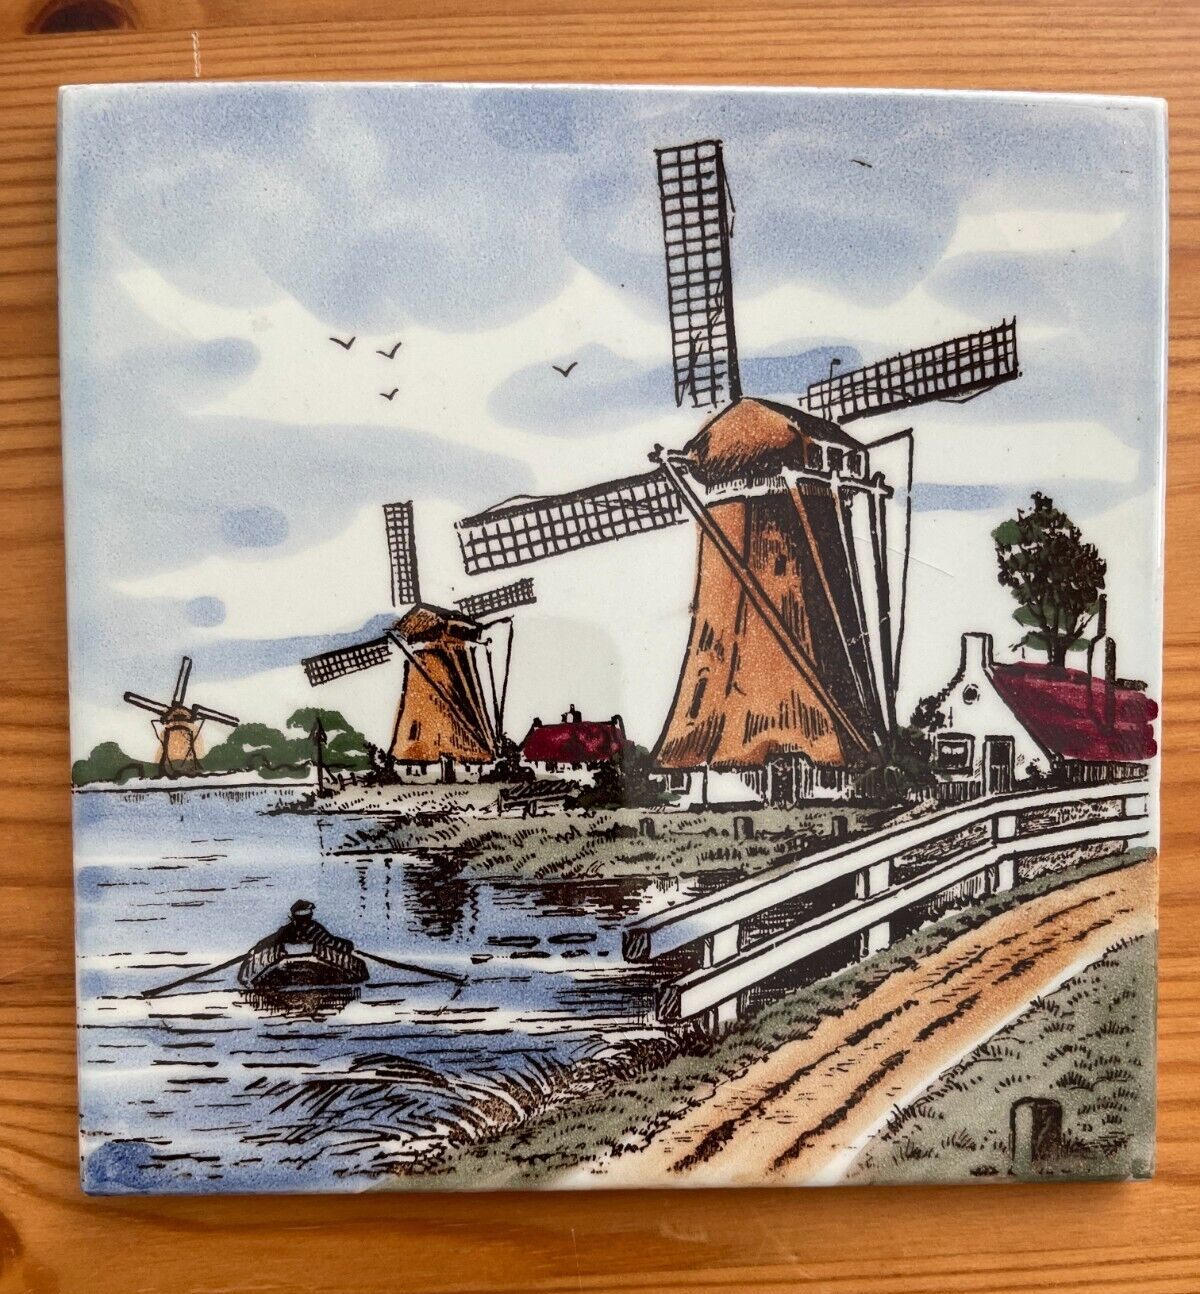 Vintage Polychrome Dutch Delft Tile 1970s 6" Square Excellent Unused Condition